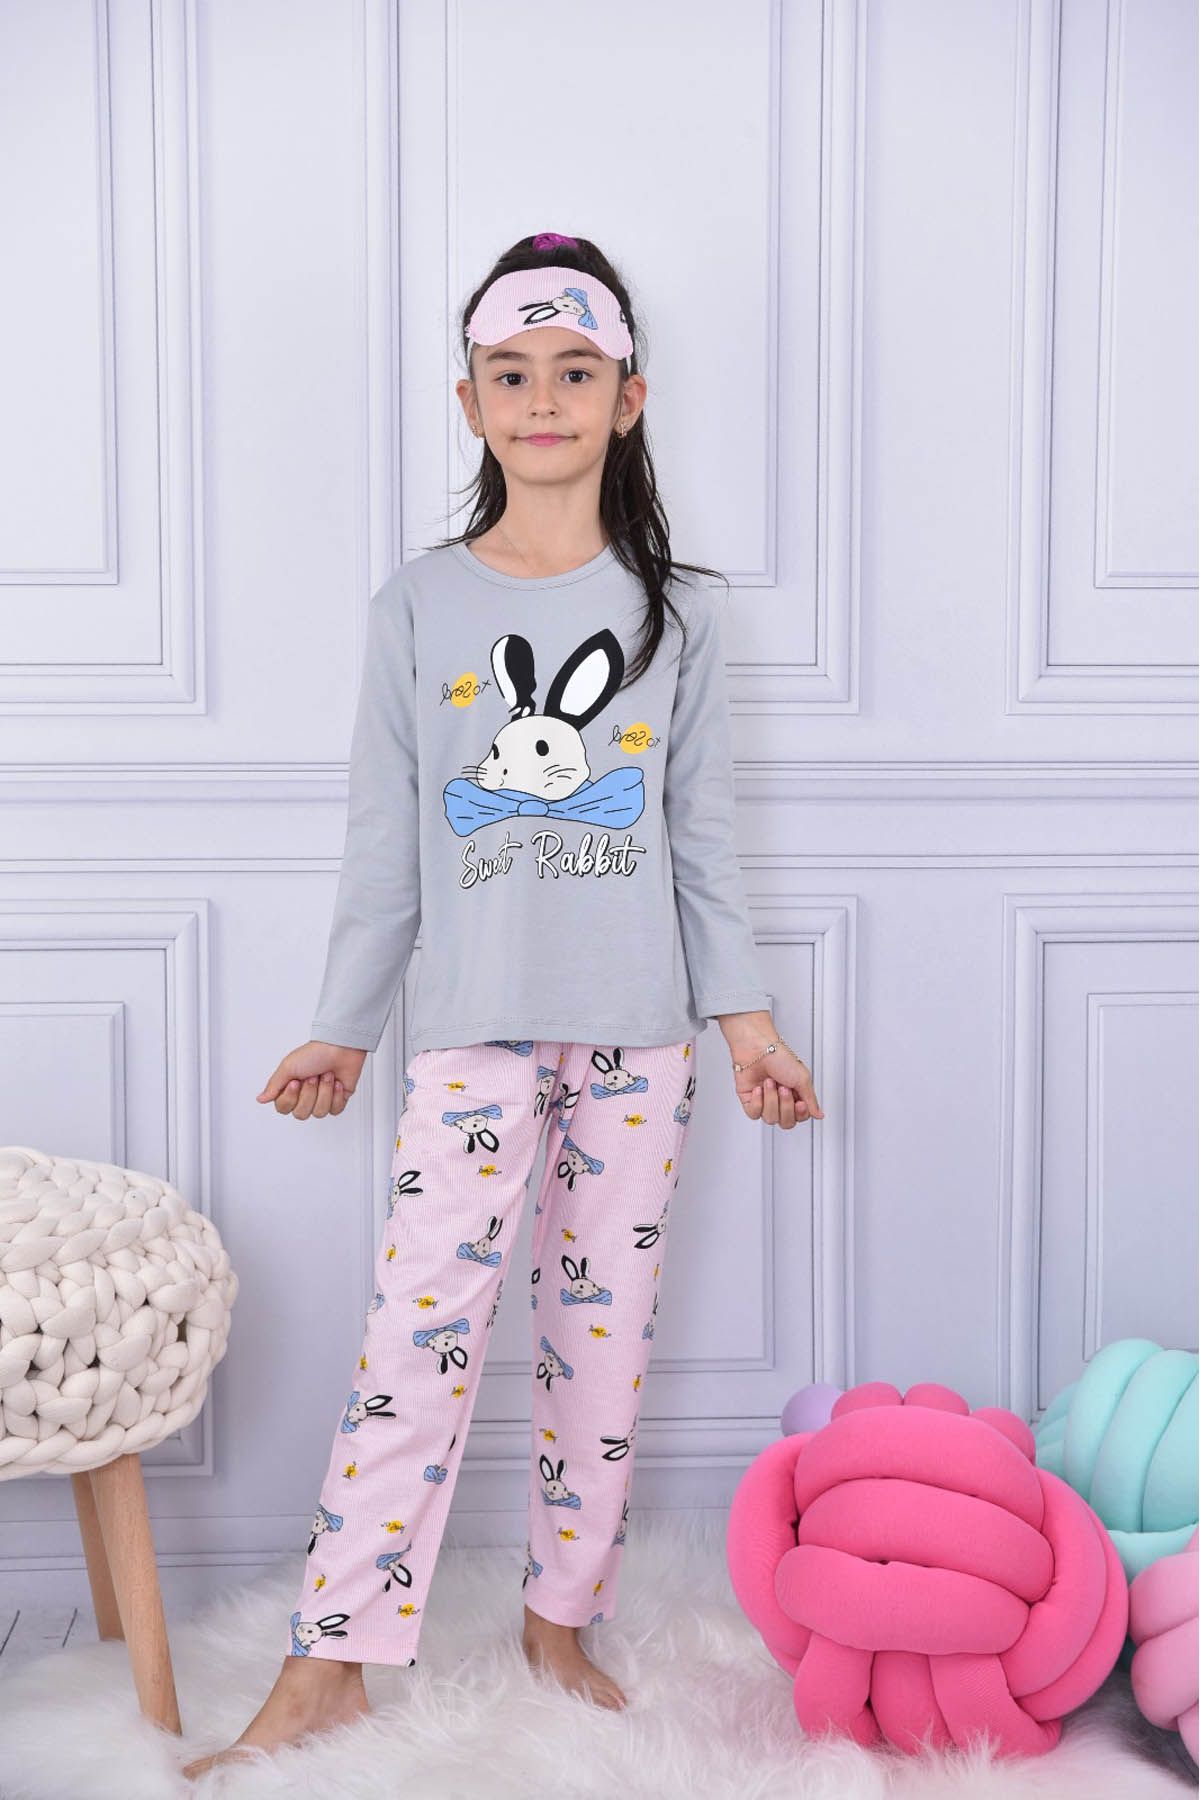 Cansın Mini Gri Fiyonklu Tavşan Baskılı Göz Bantlı Kız Çocuk Pijama Takımı 17024